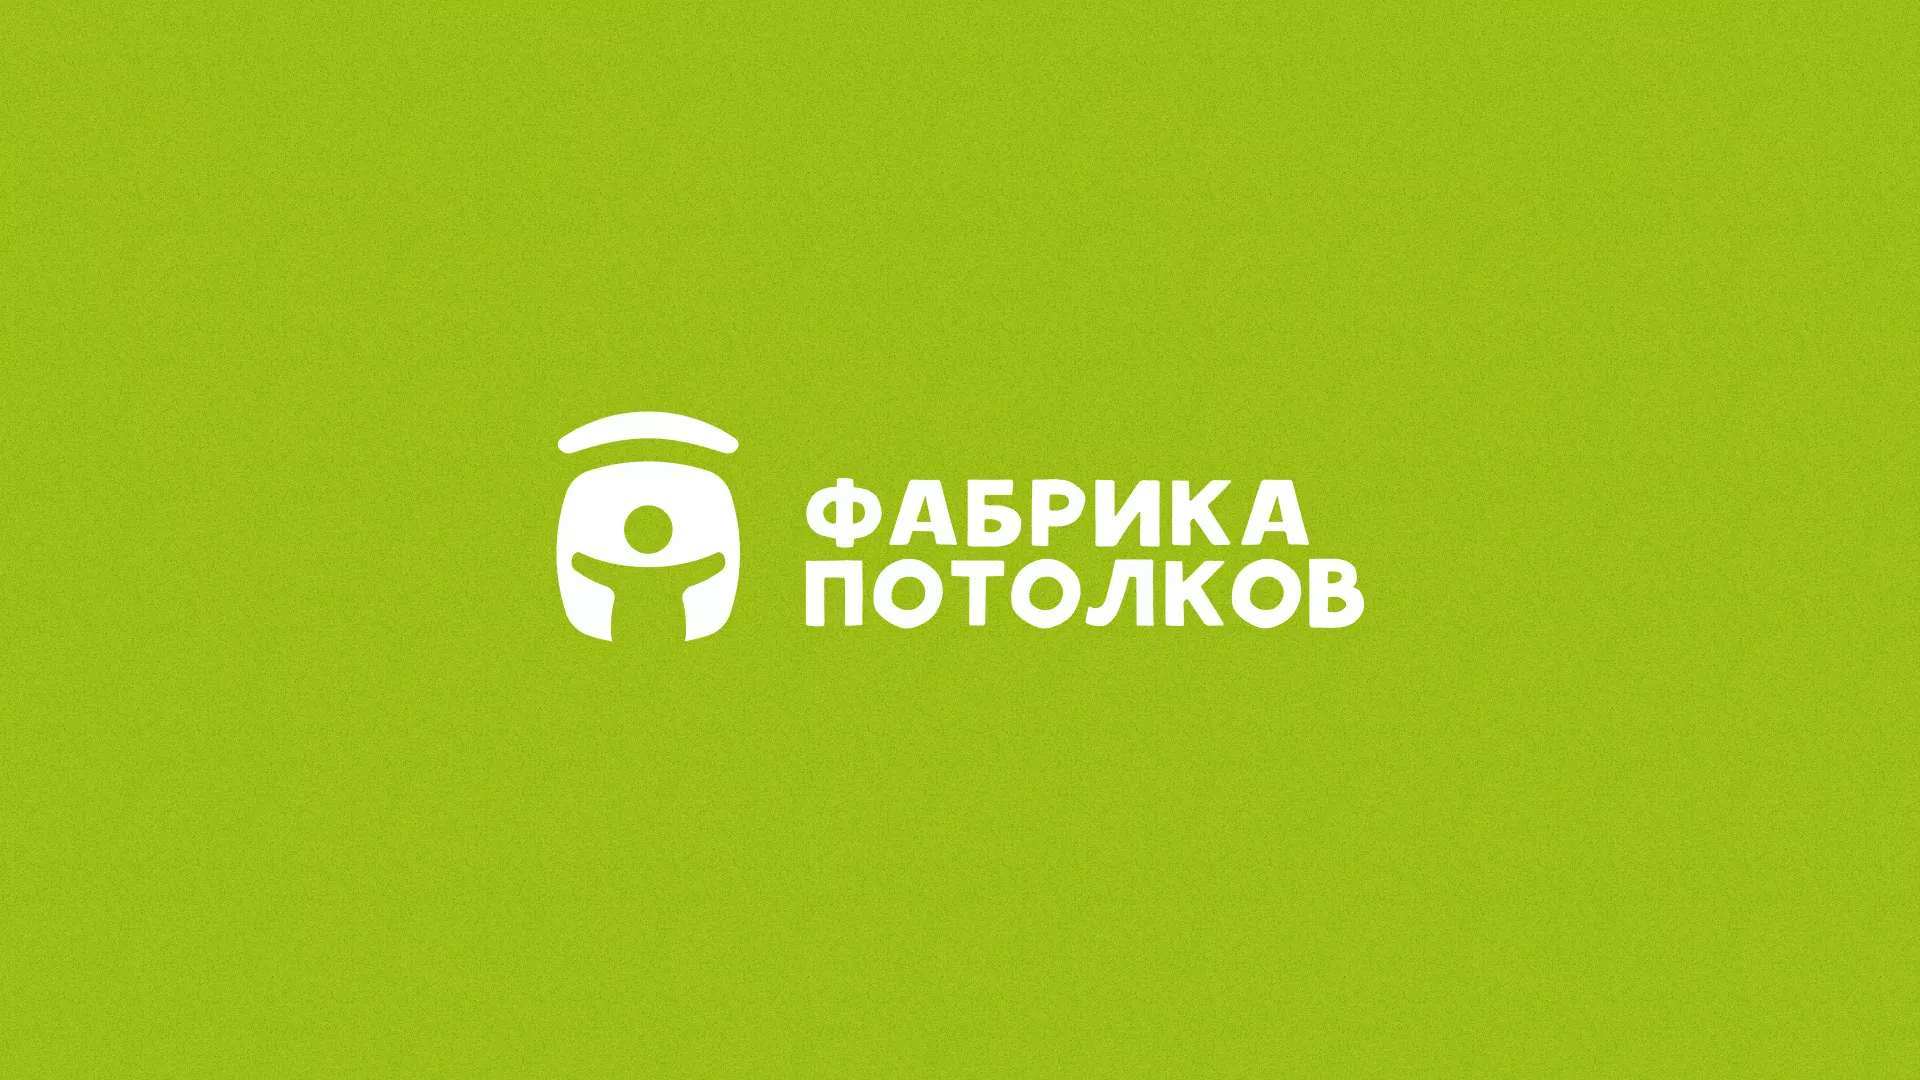 Разработка логотипа для производства натяжных потолков в Александрове